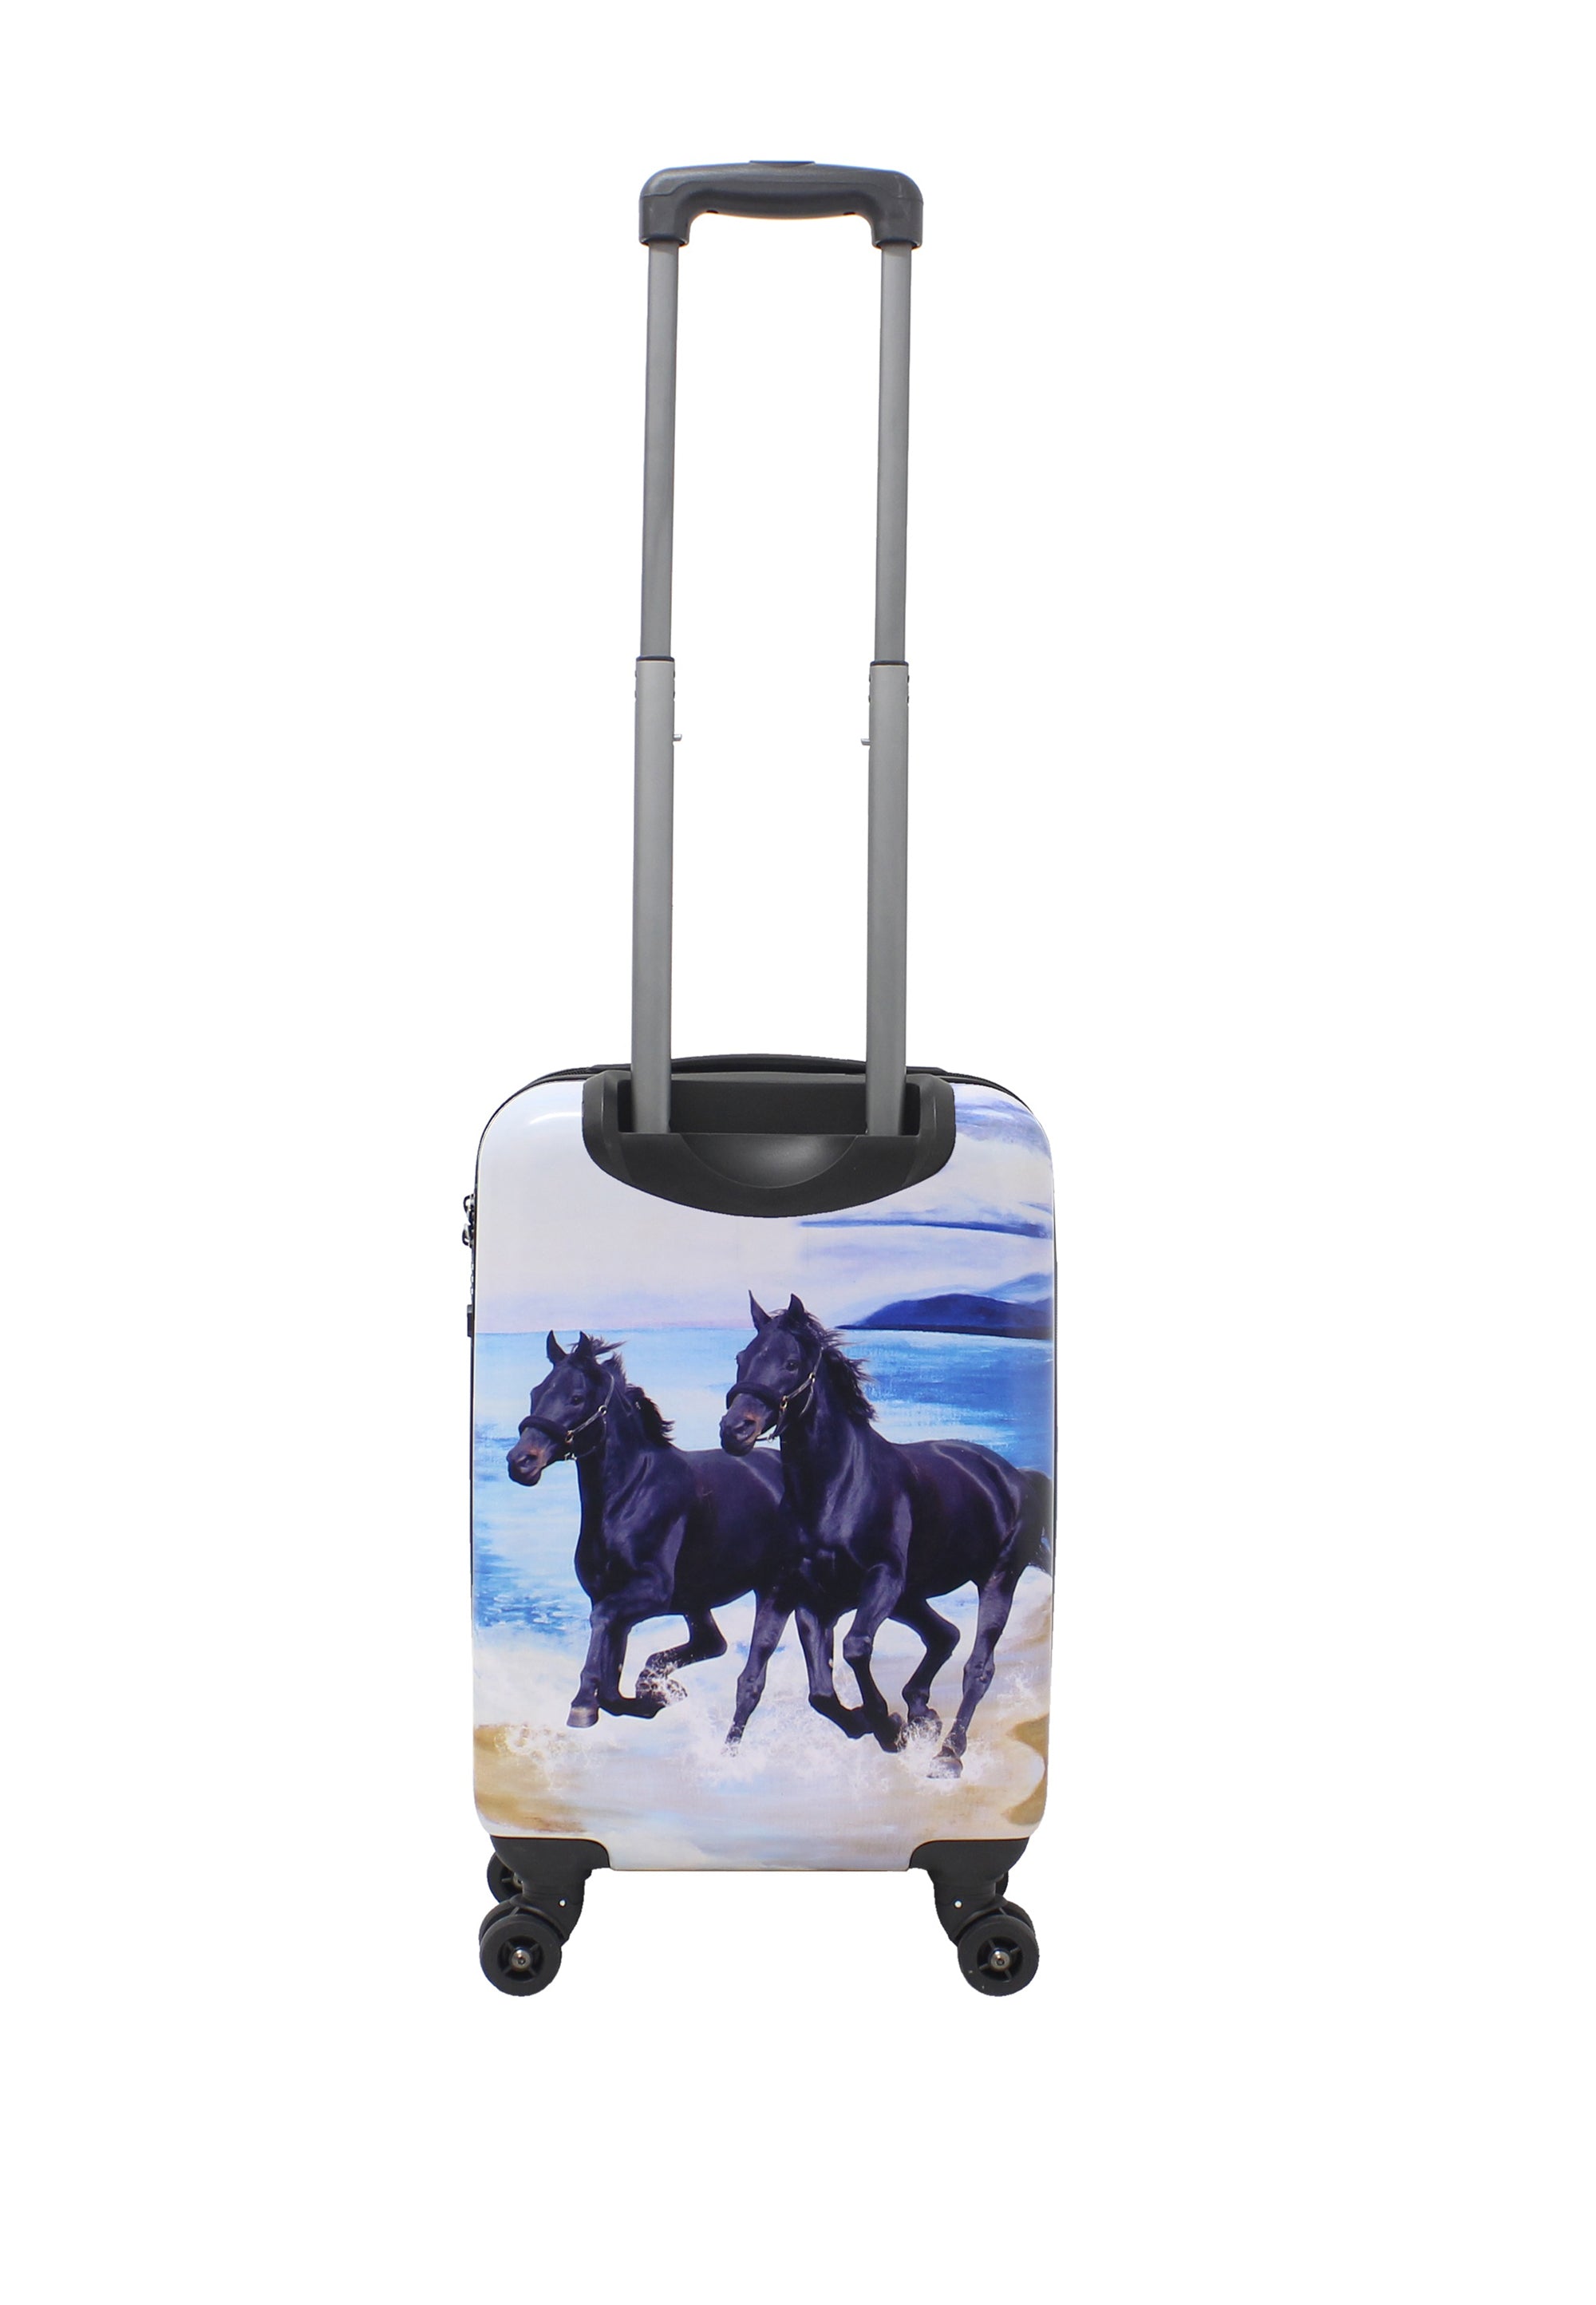 Handgepäck Koffer mit Pferden der Reisekoffer in Gr. S von Saxoline